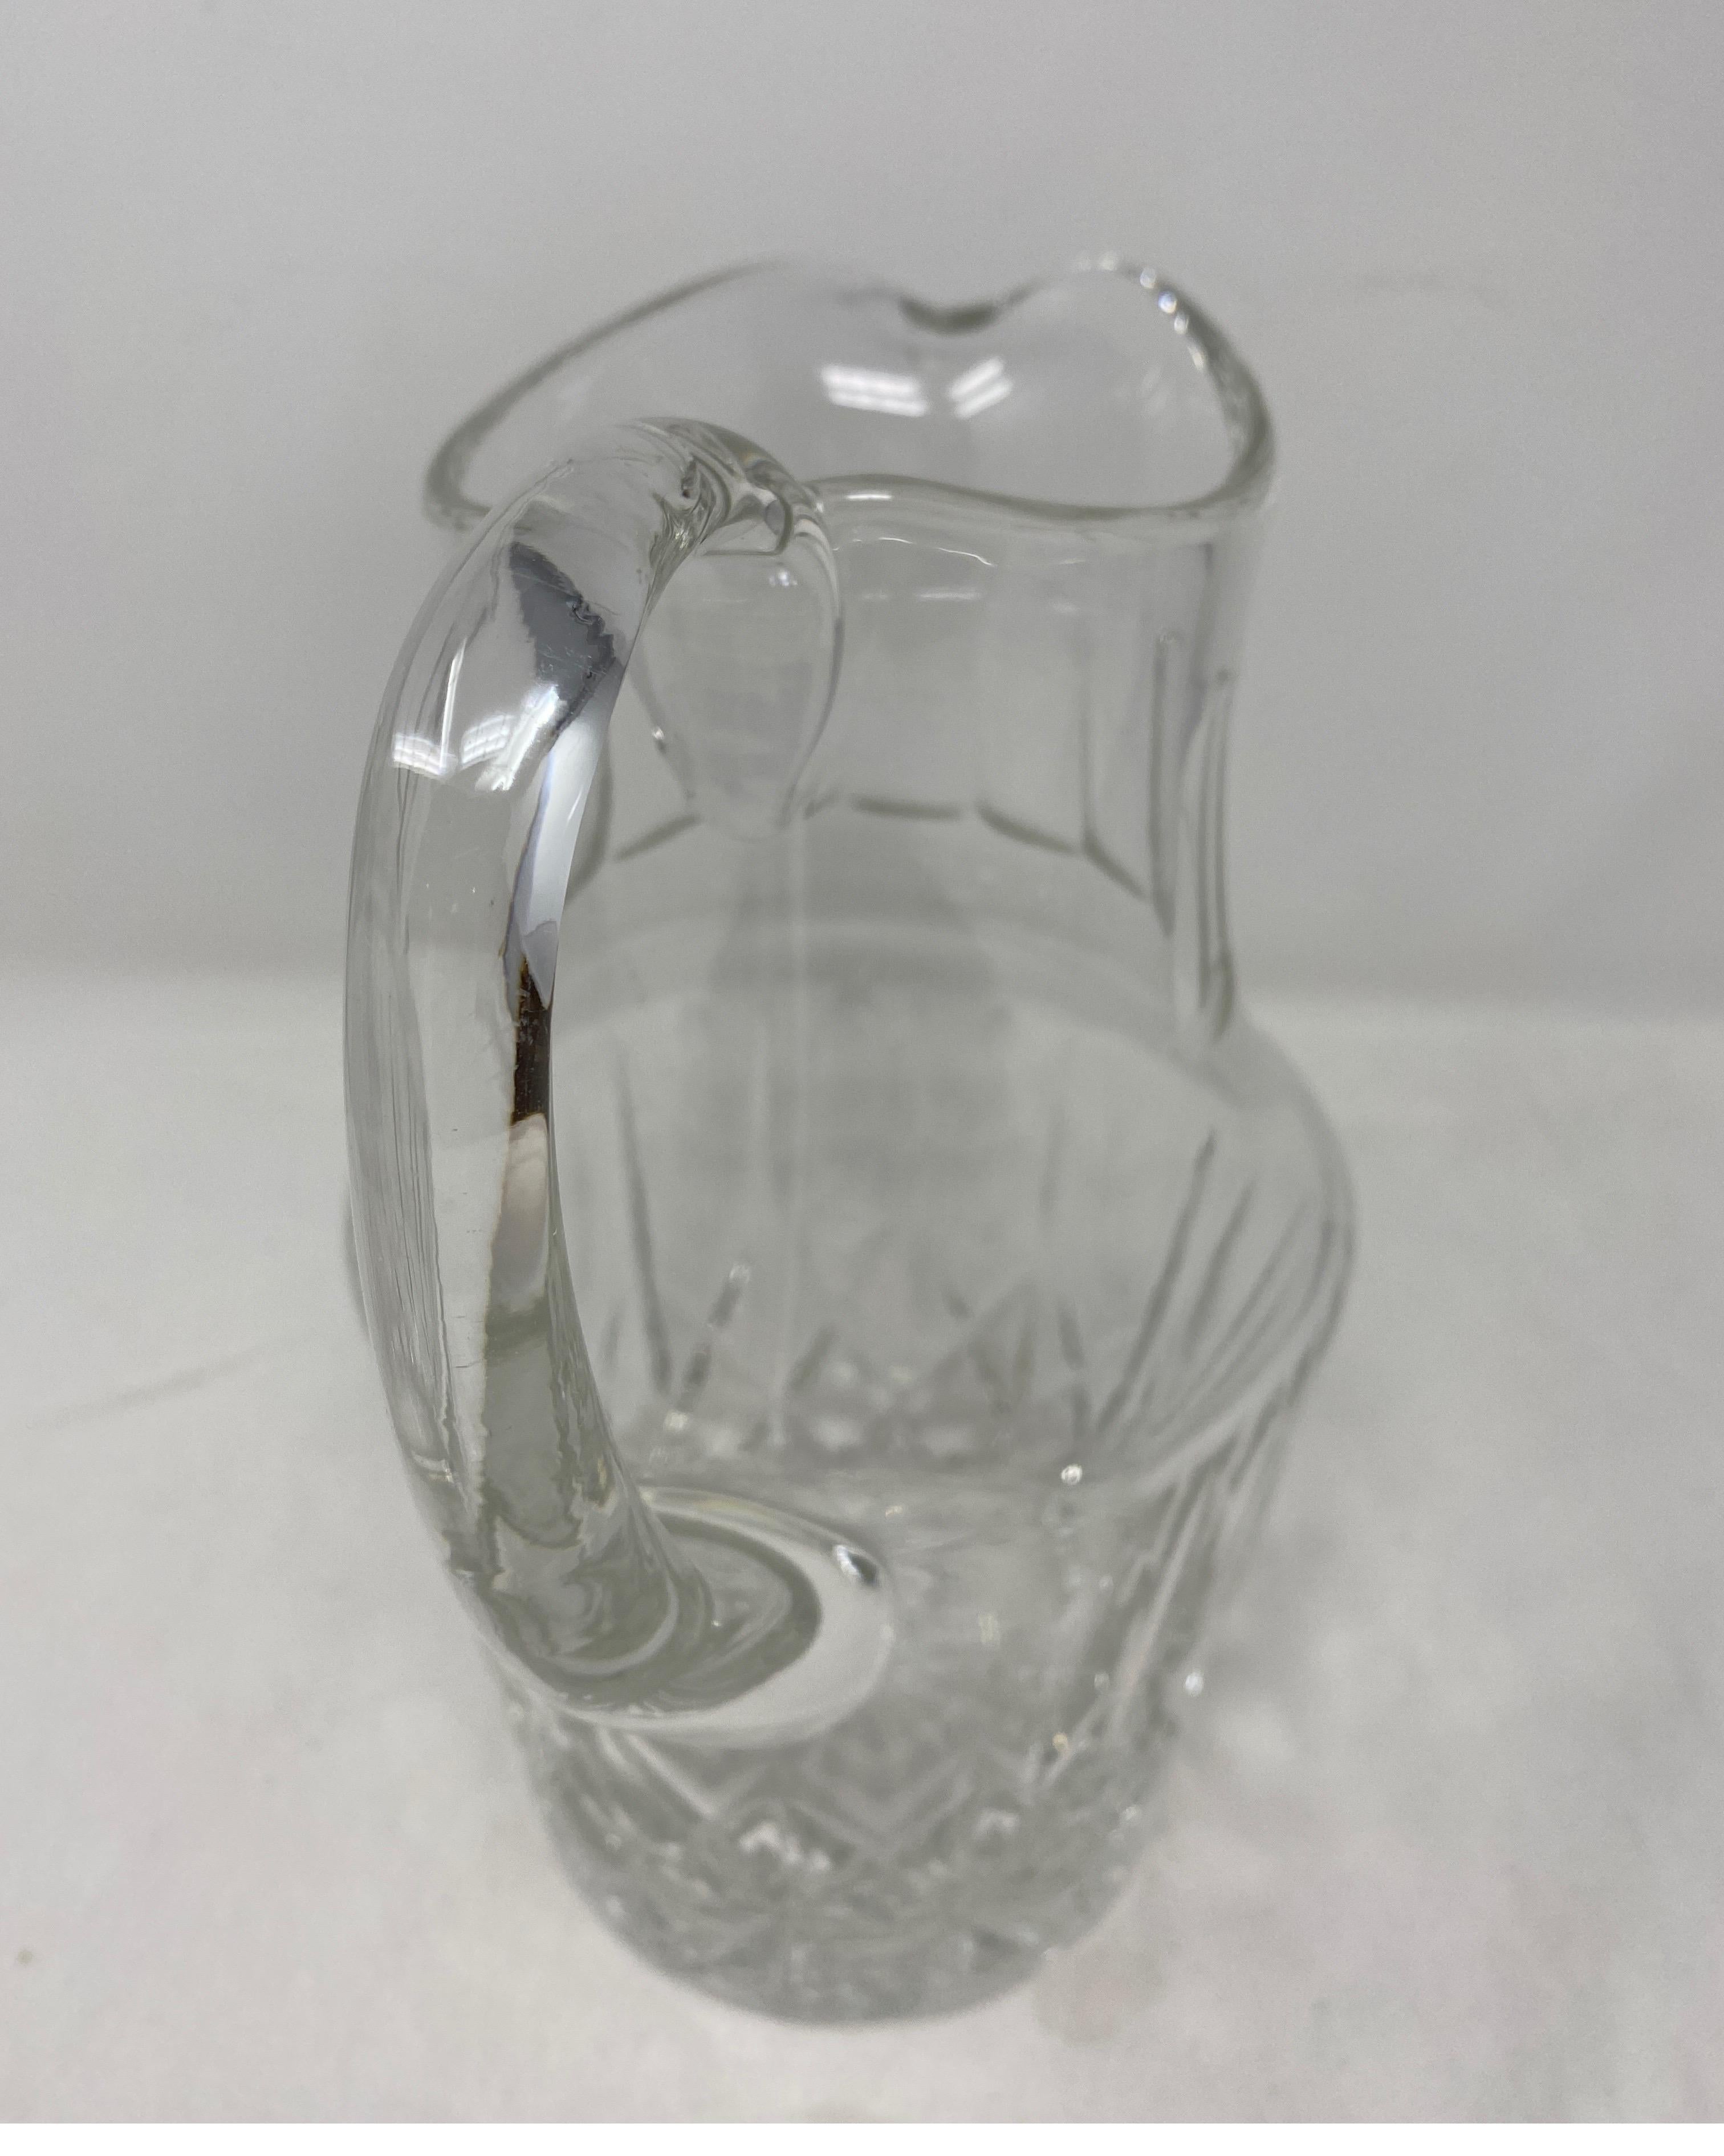 Antigua jarra de cristal. Siglo XIX.
7